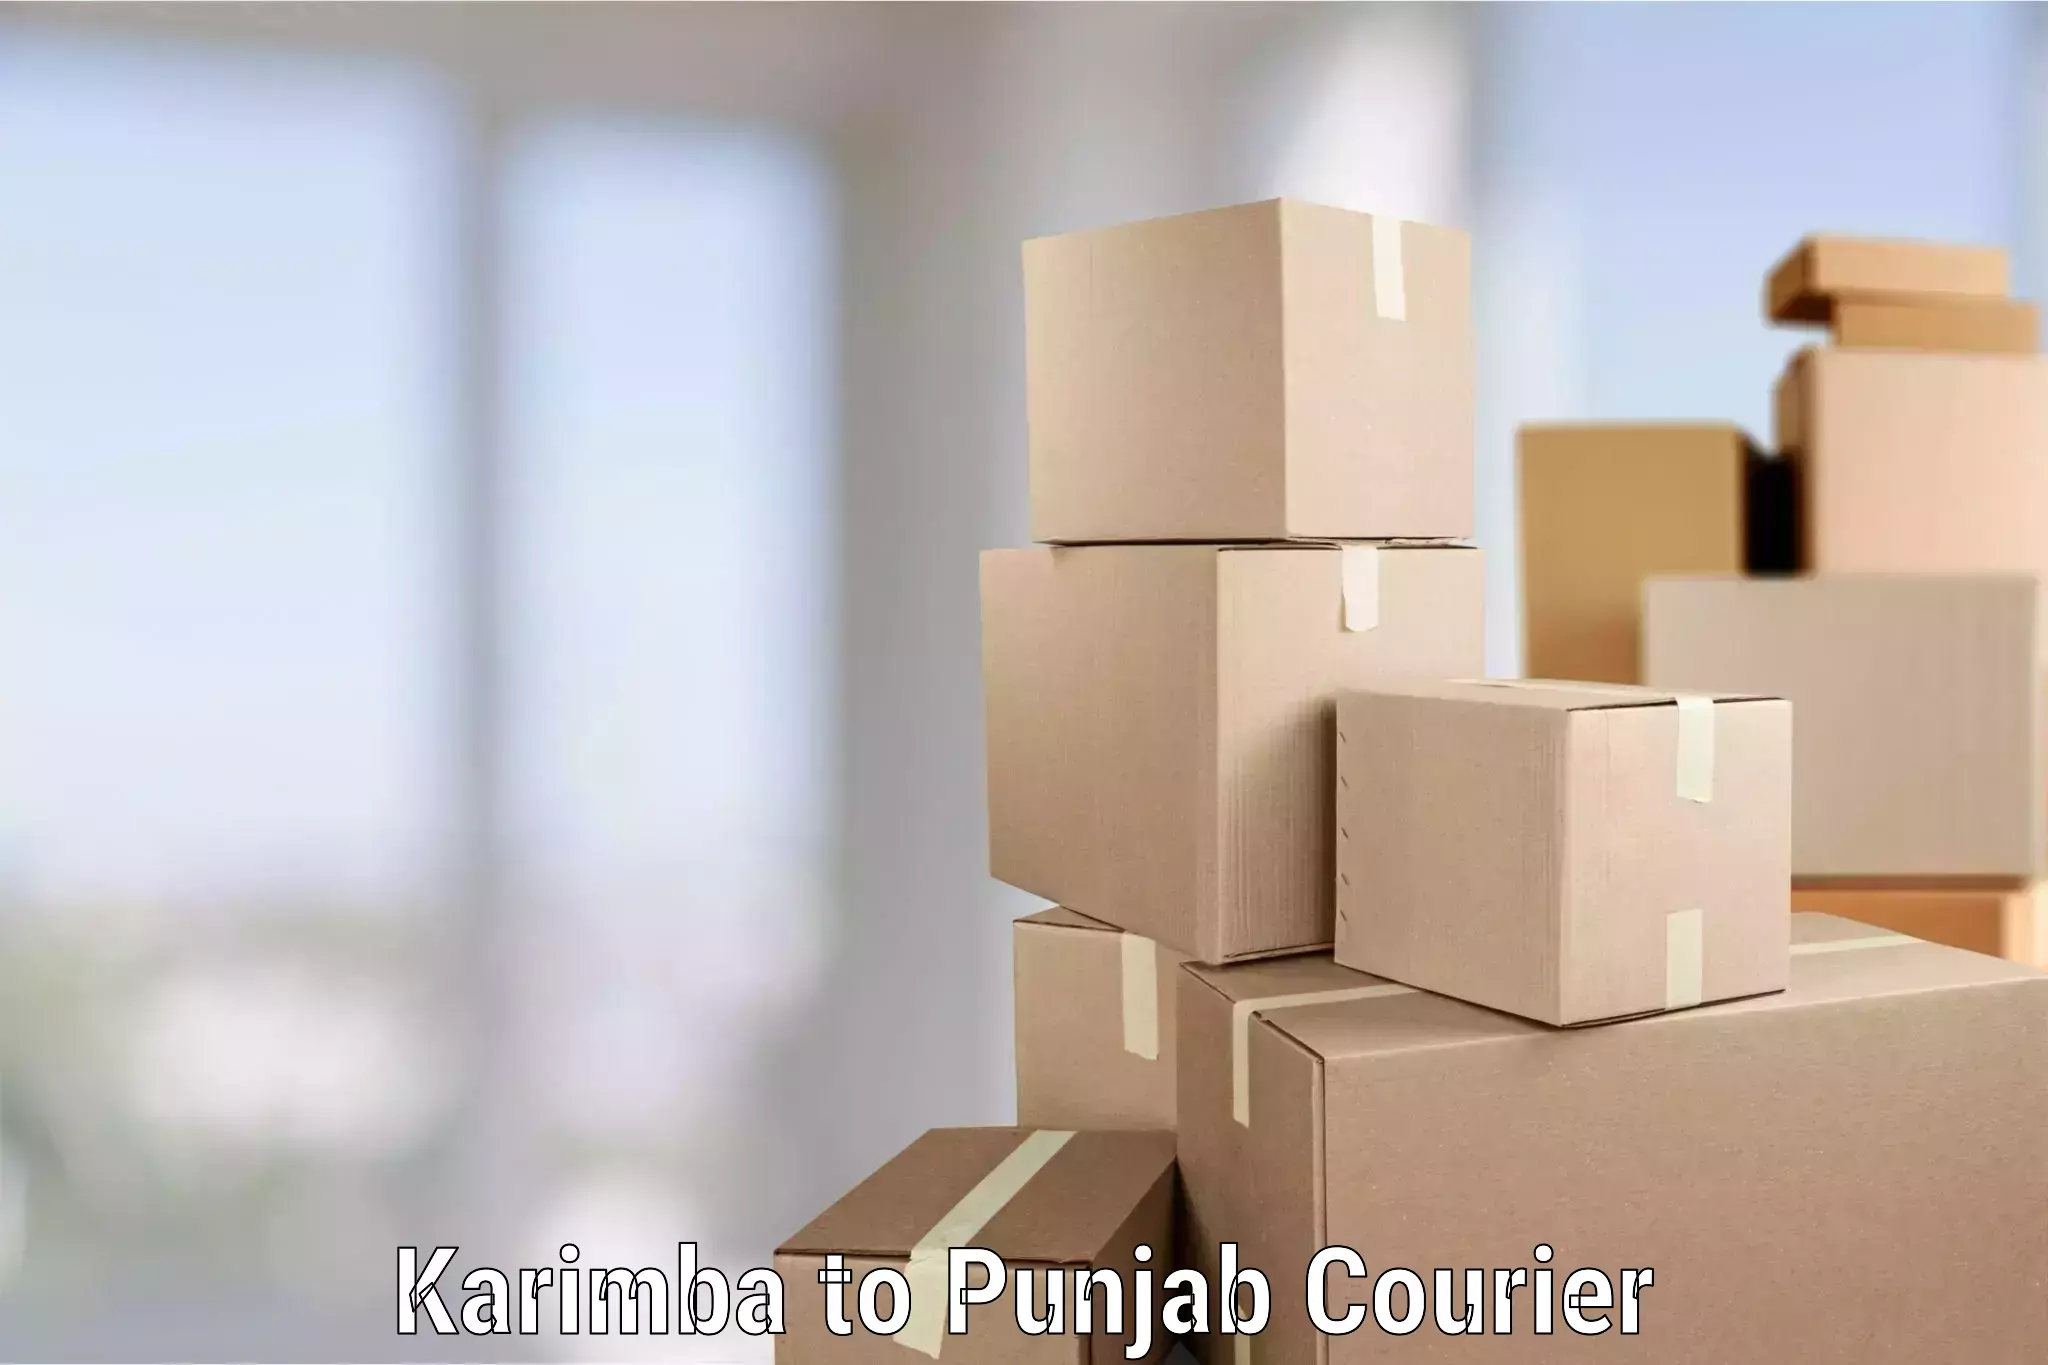 Furniture transport professionals Karimba to Punjab